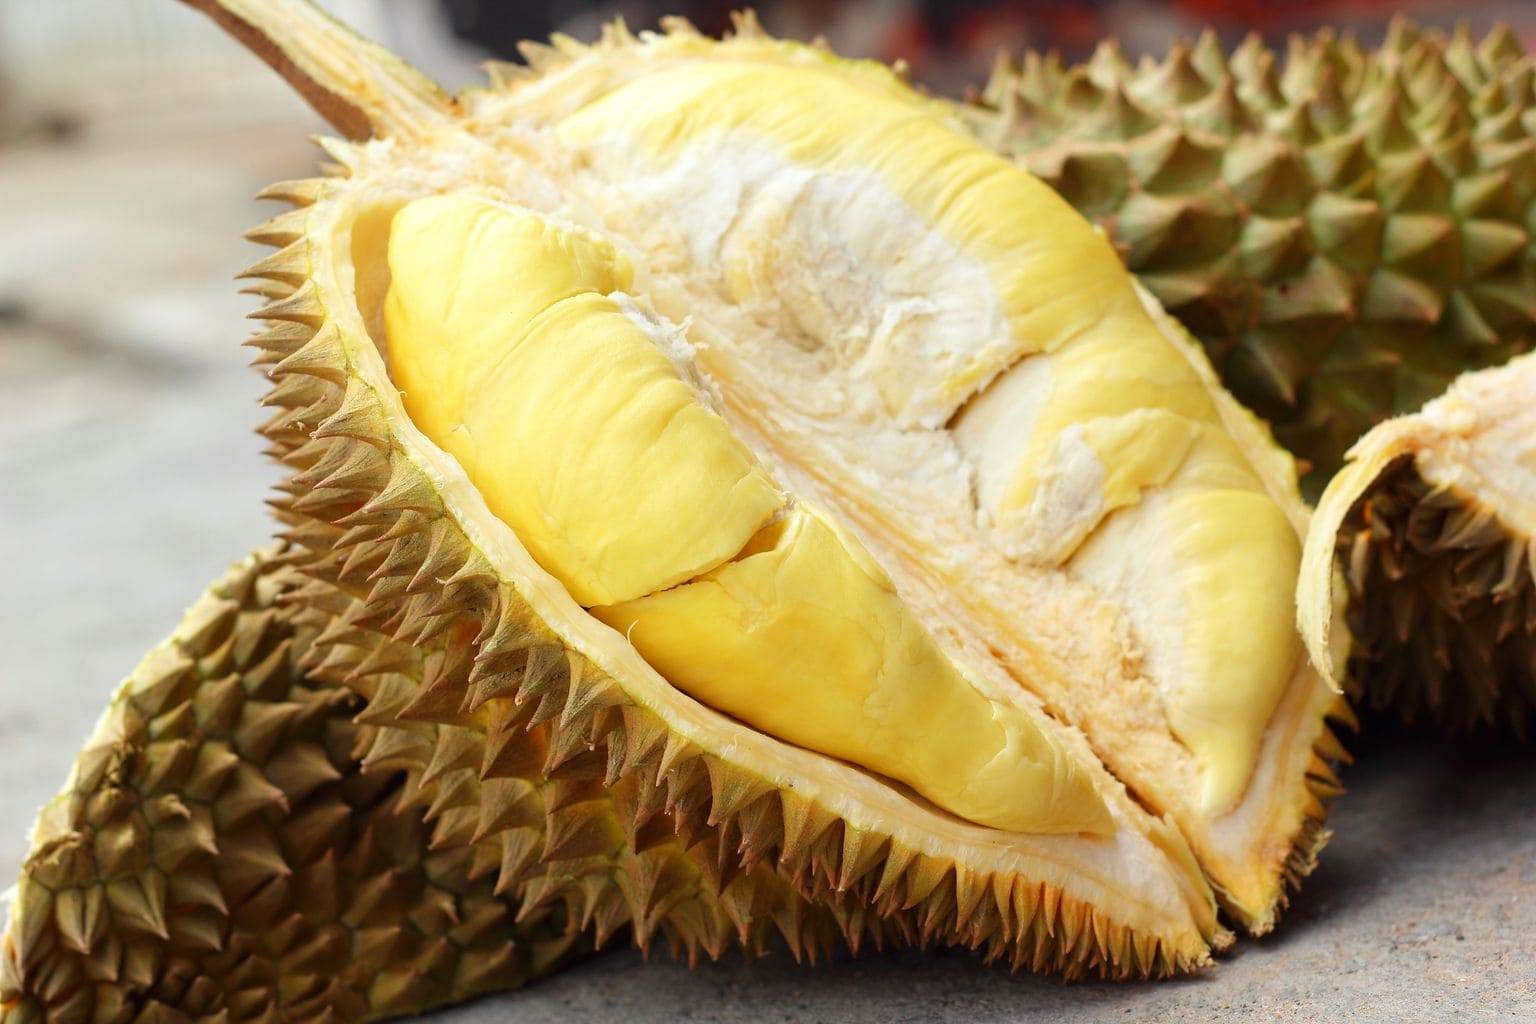 Co to jest durian, durian zapach.